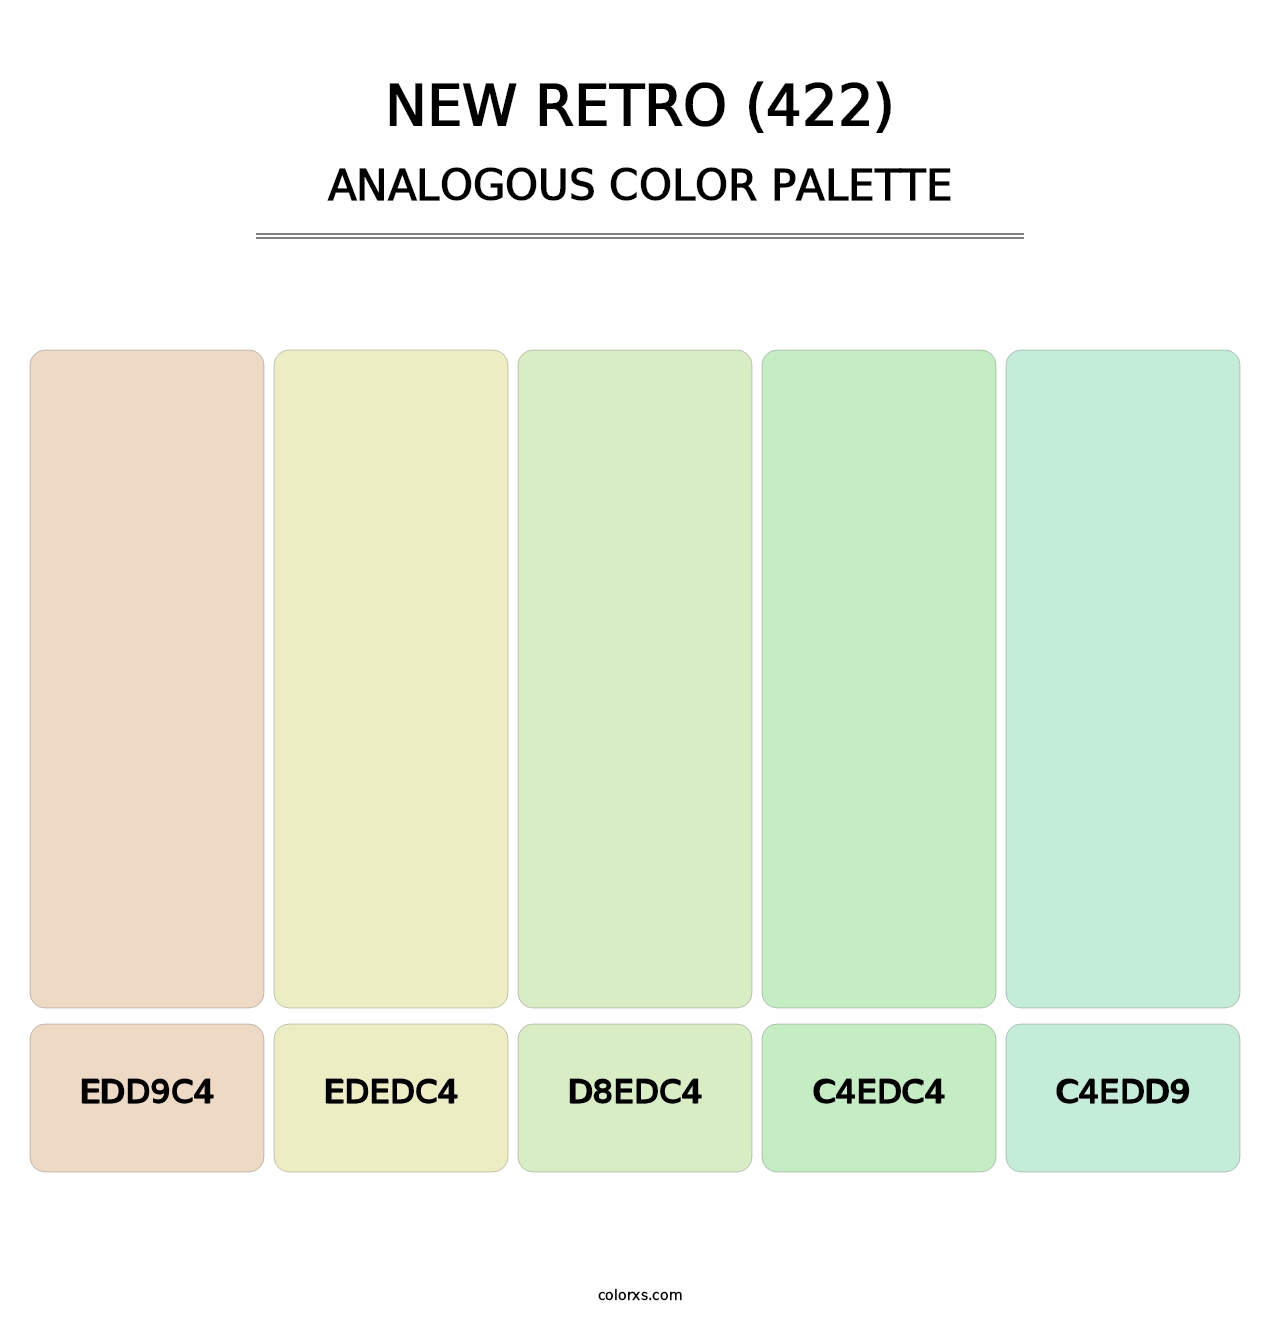 New Retro (422) - Analogous Color Palette